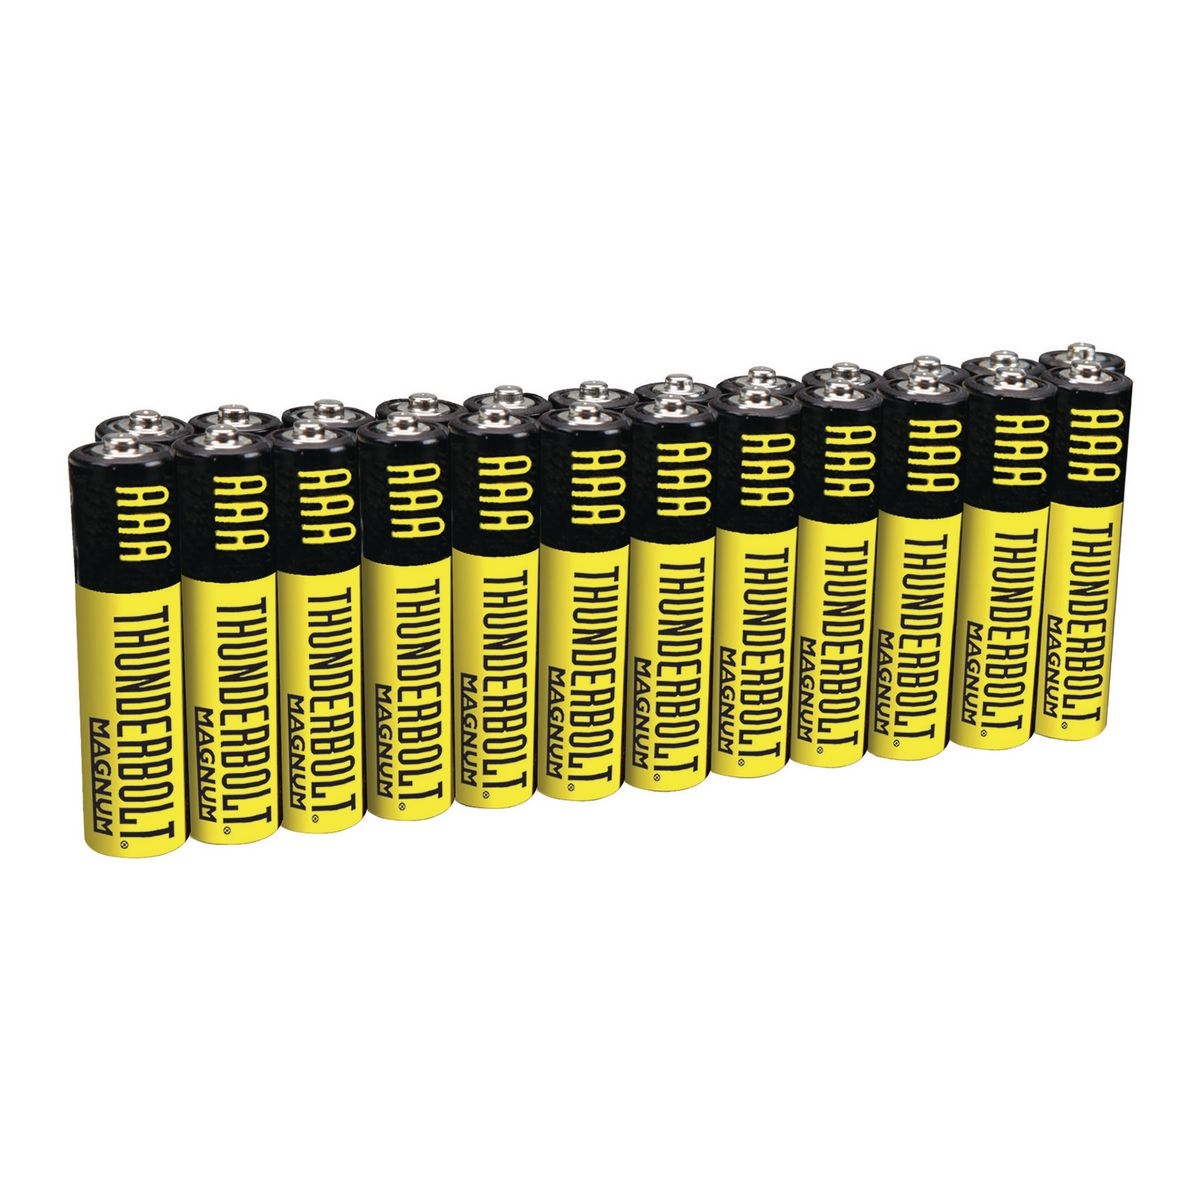 THUNDERBOLT AAA Heavy Duty Batteries 24 Pk. – Item 61677 / 68377 / 61273